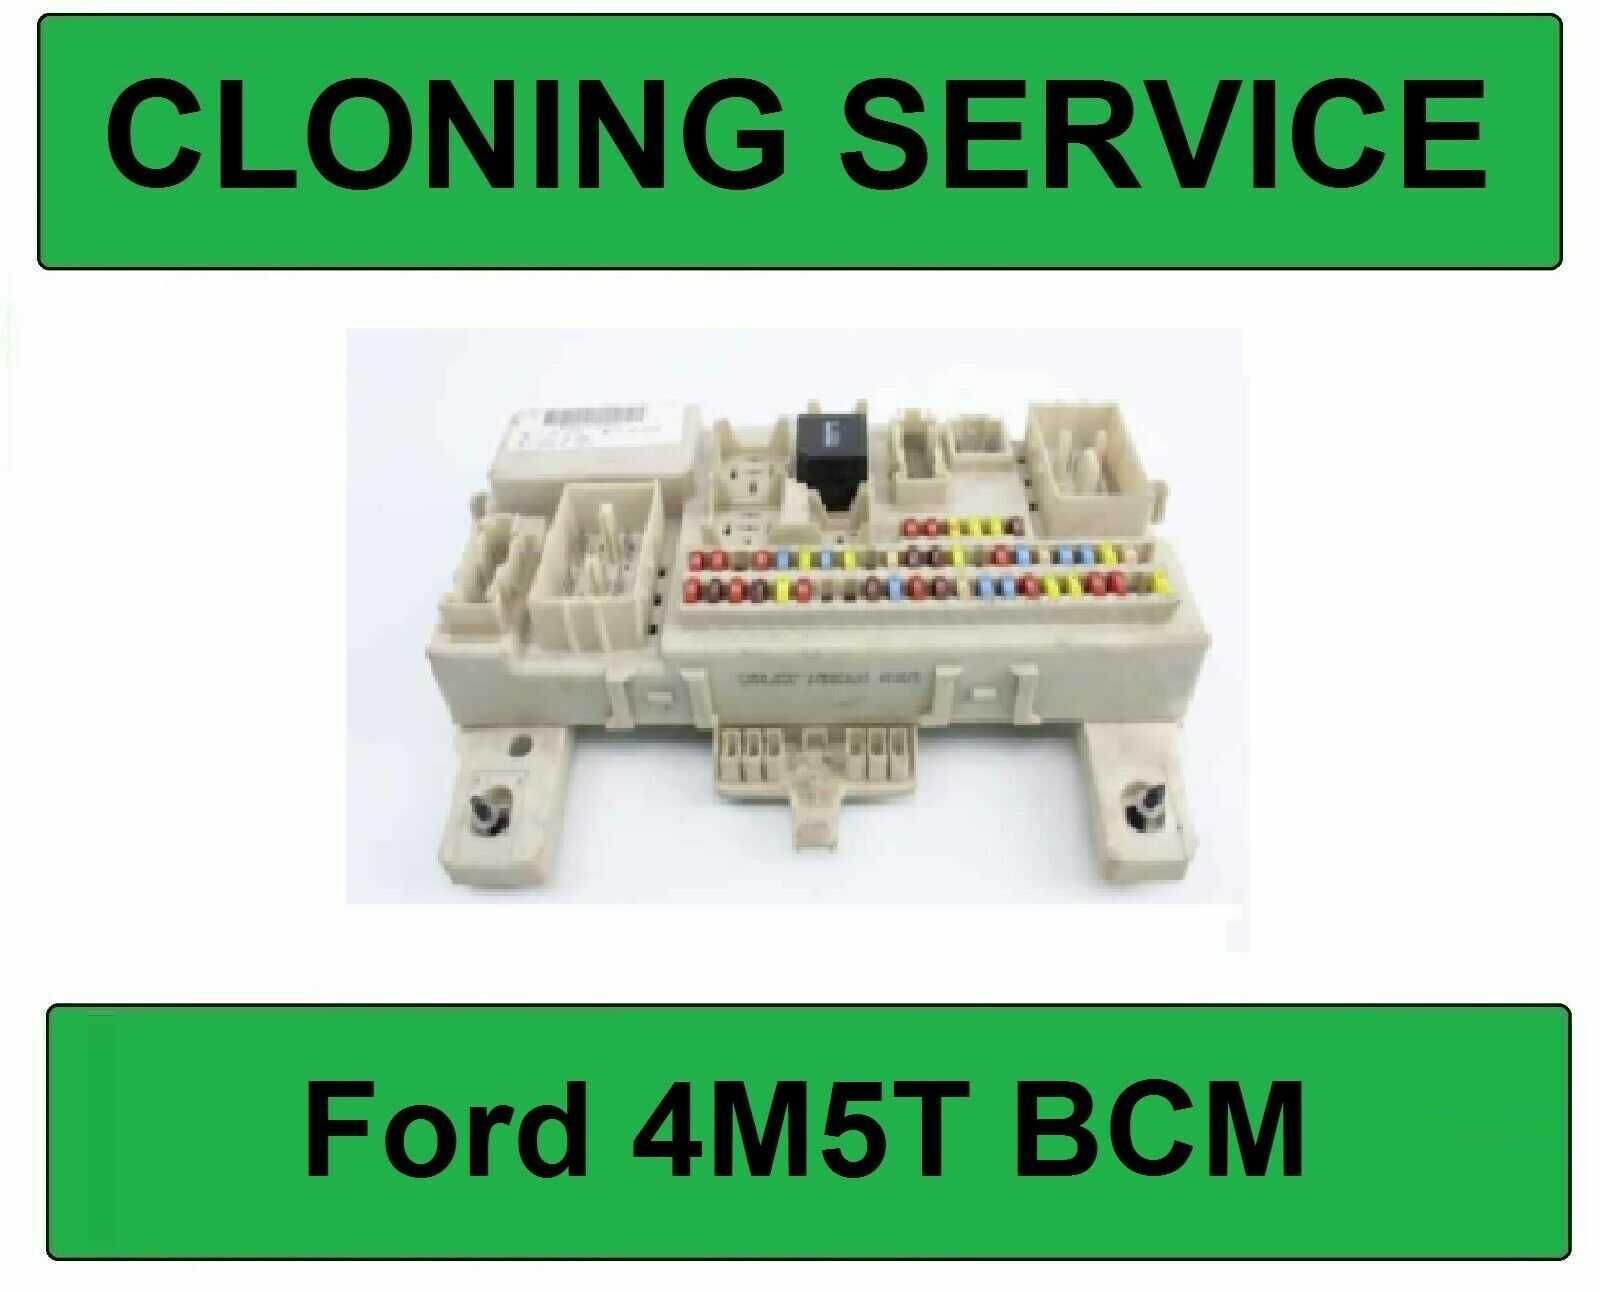 Reparatii sau Clonare Module Confort BCM, BSI, CEM, SAM, CAS3, FRM3